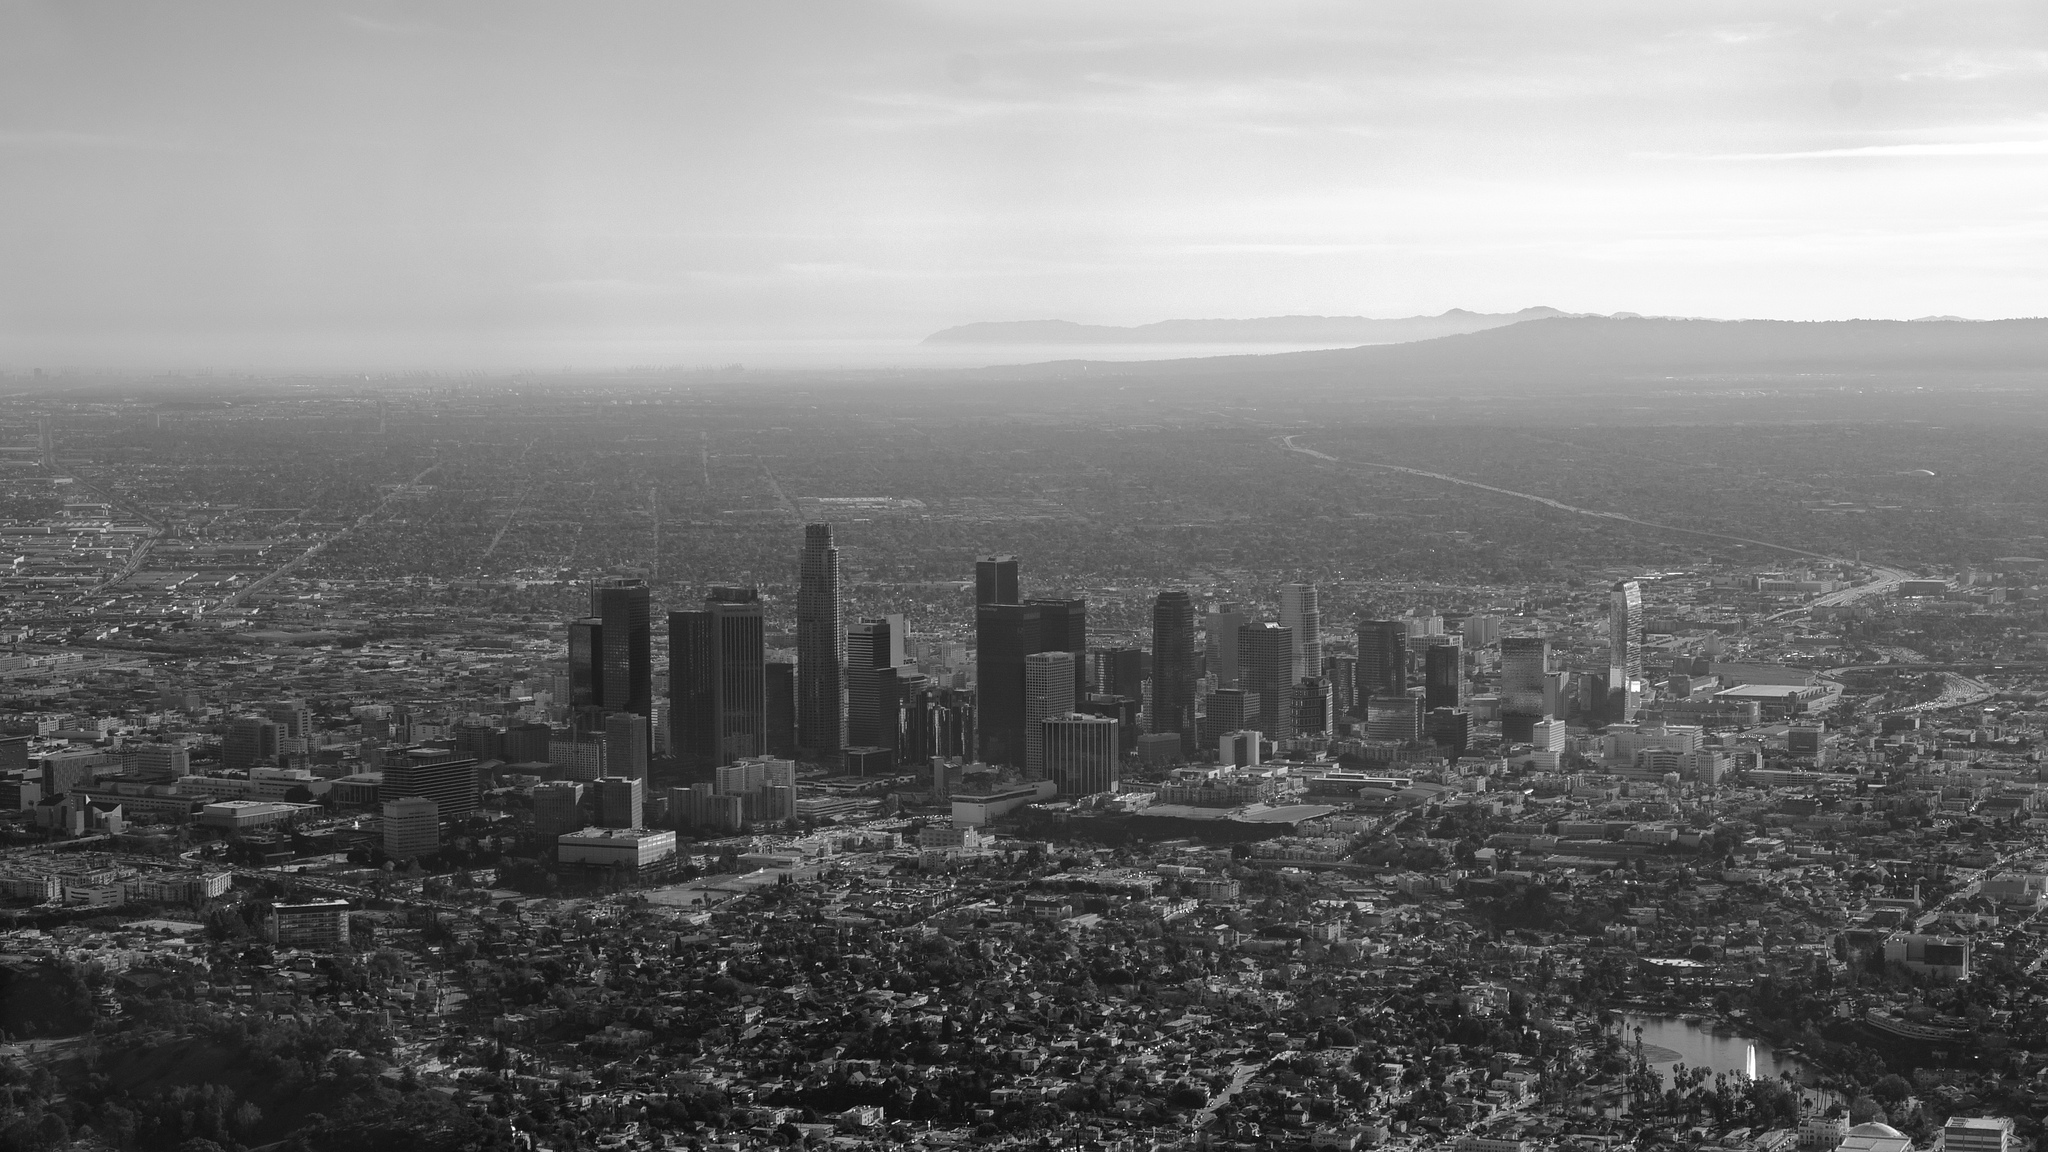 Скачать обои бесплатно Города, Лос Анджелес, Сделано Человеком картинка на рабочий стол ПК